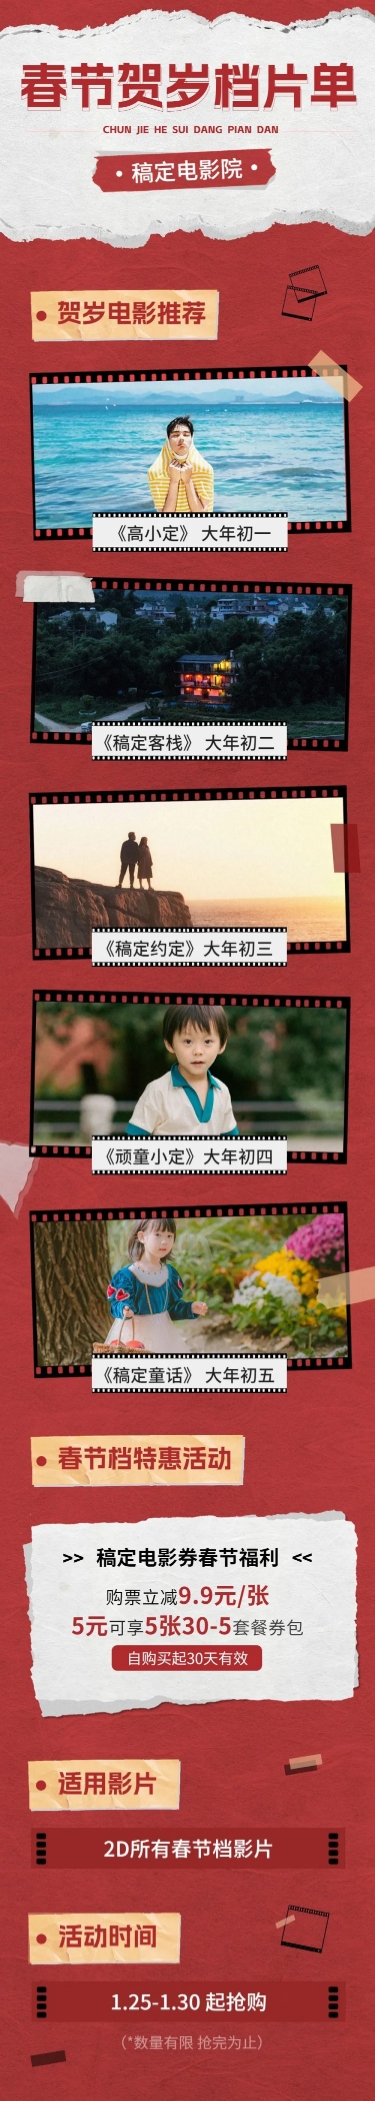 春节电影院促销活动宣传长图